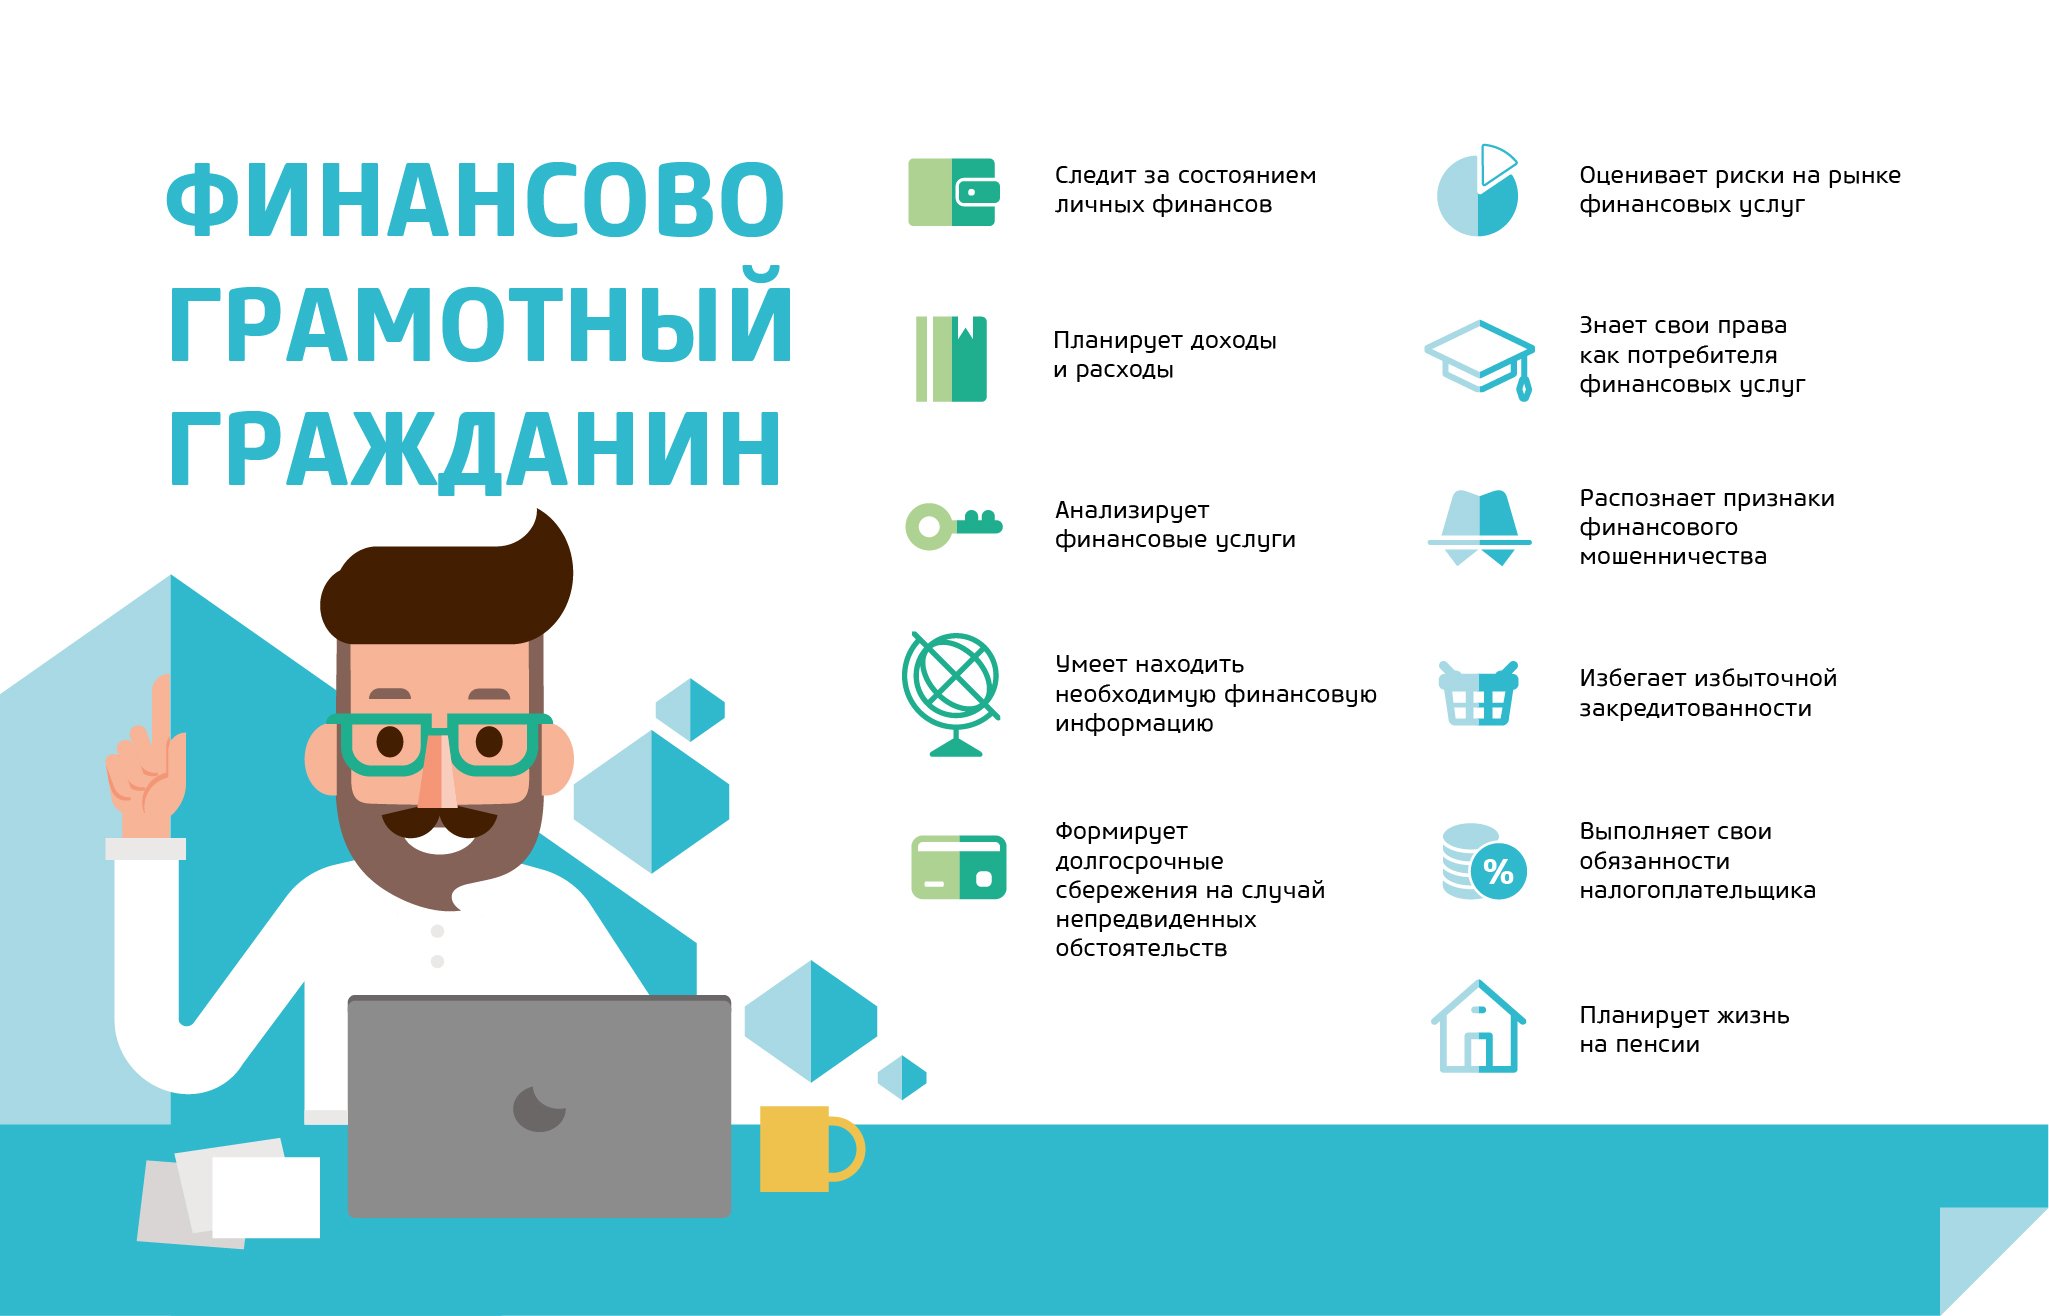 Преподаватели и студенты Орловского государственного университета приняли участие в серии вебинаров стенда Минфина России в рамках ММСО